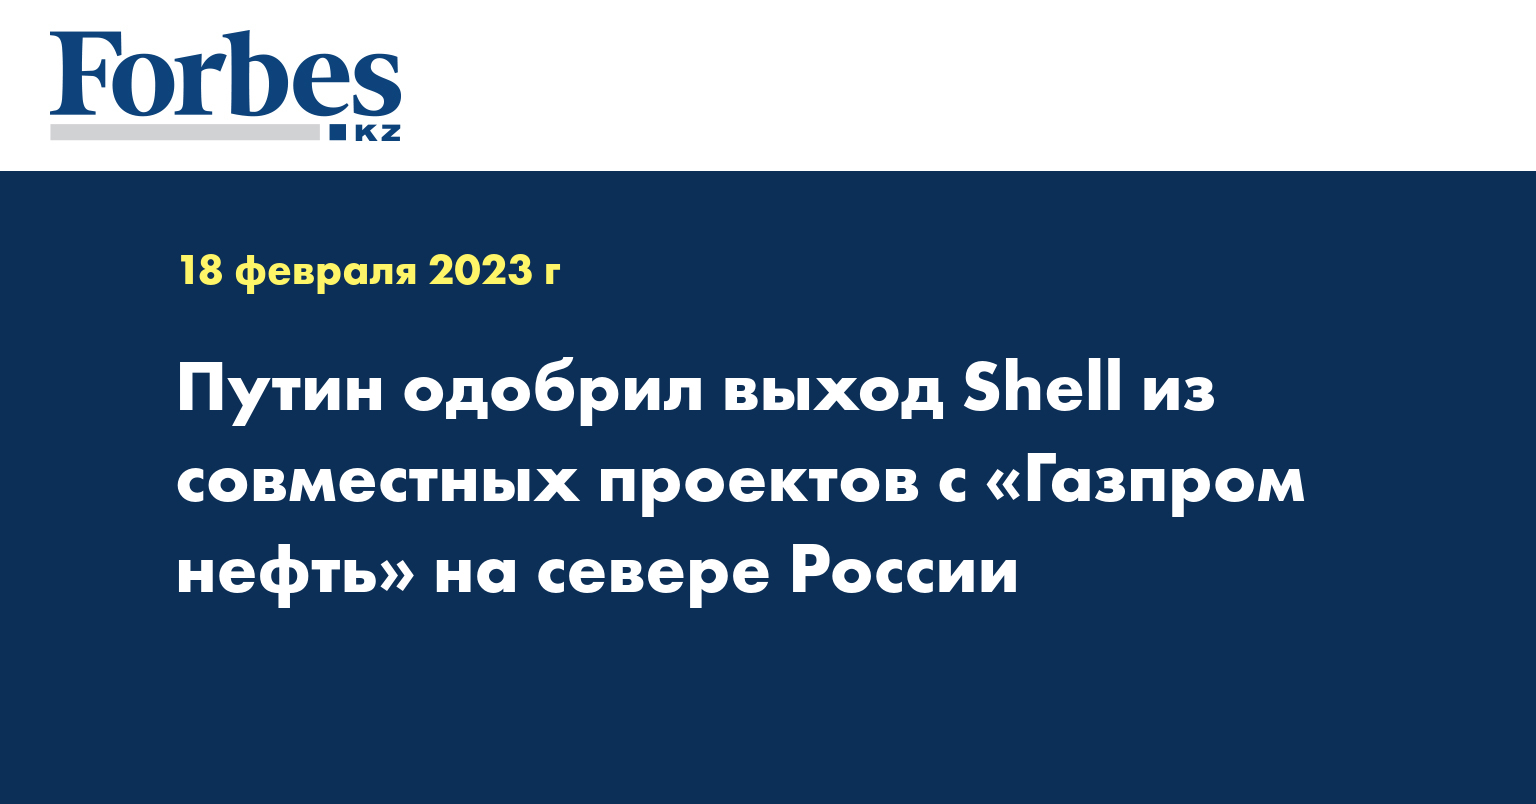 Путин одобрил выход Shell из совместных проектов с «Газпром нефть» на севере России